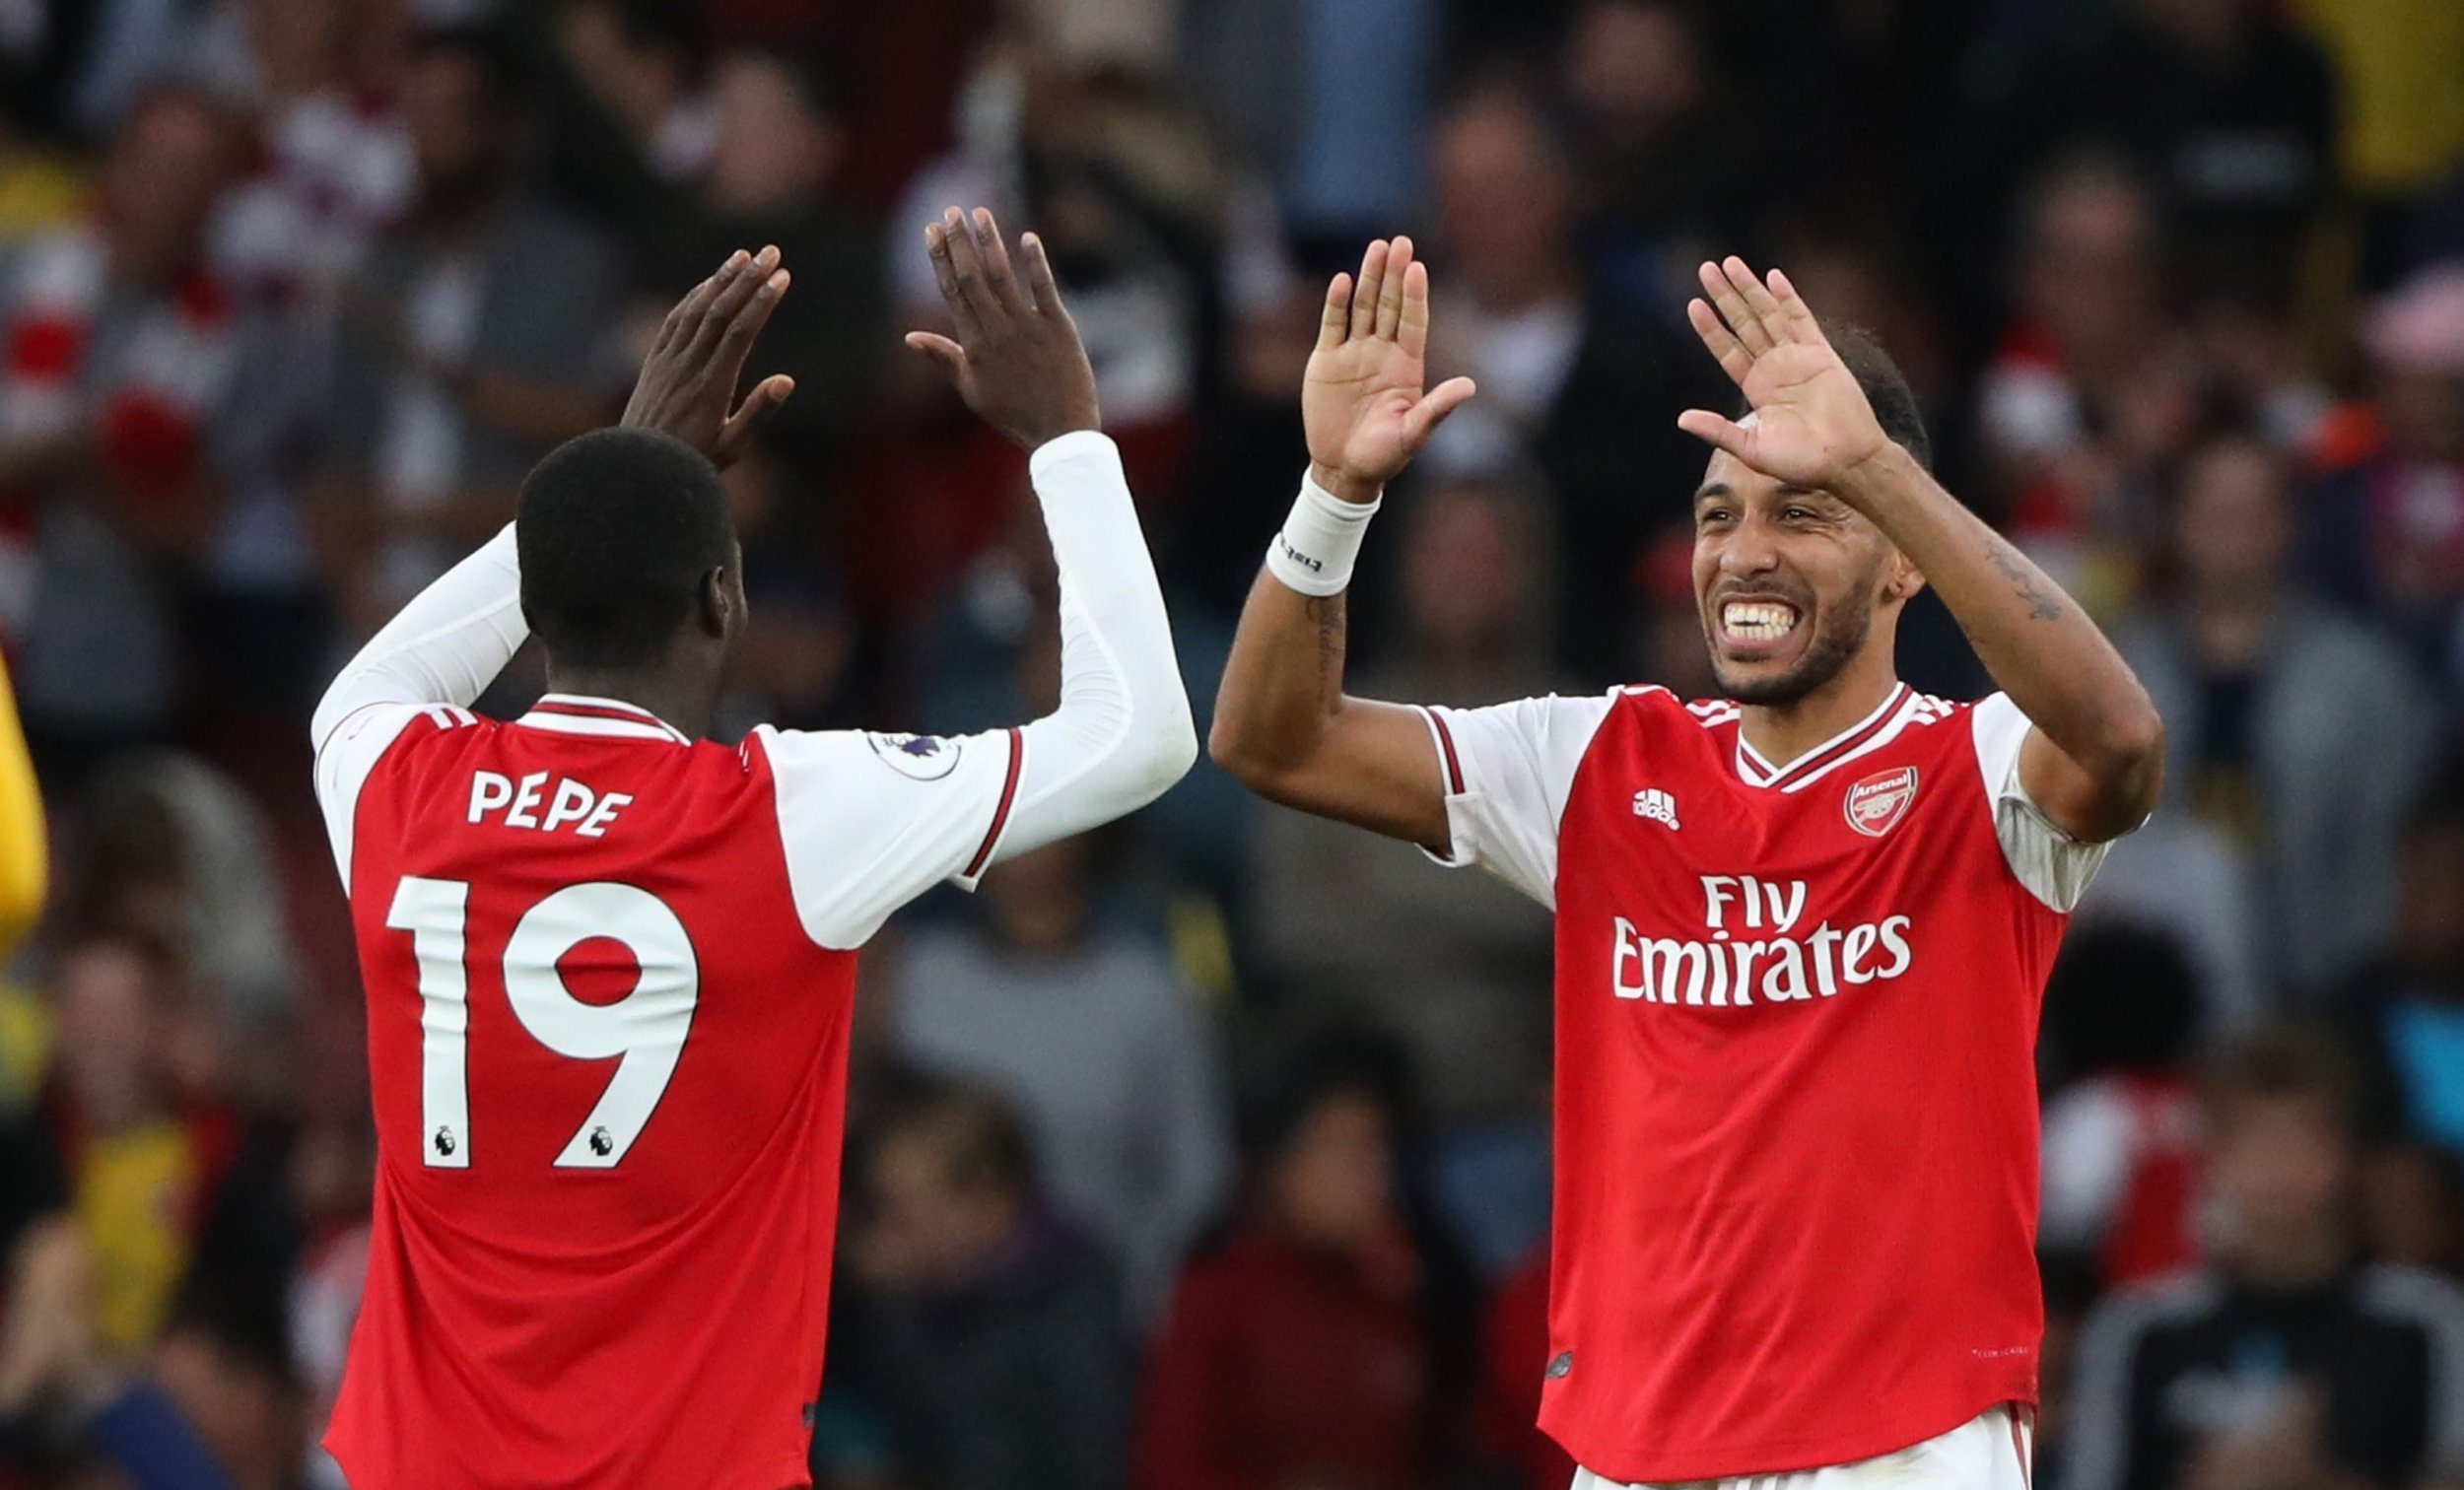 Arsenal vs Southampton : Aubameyang et Pépé titulaires, les compos officielles dévoilées